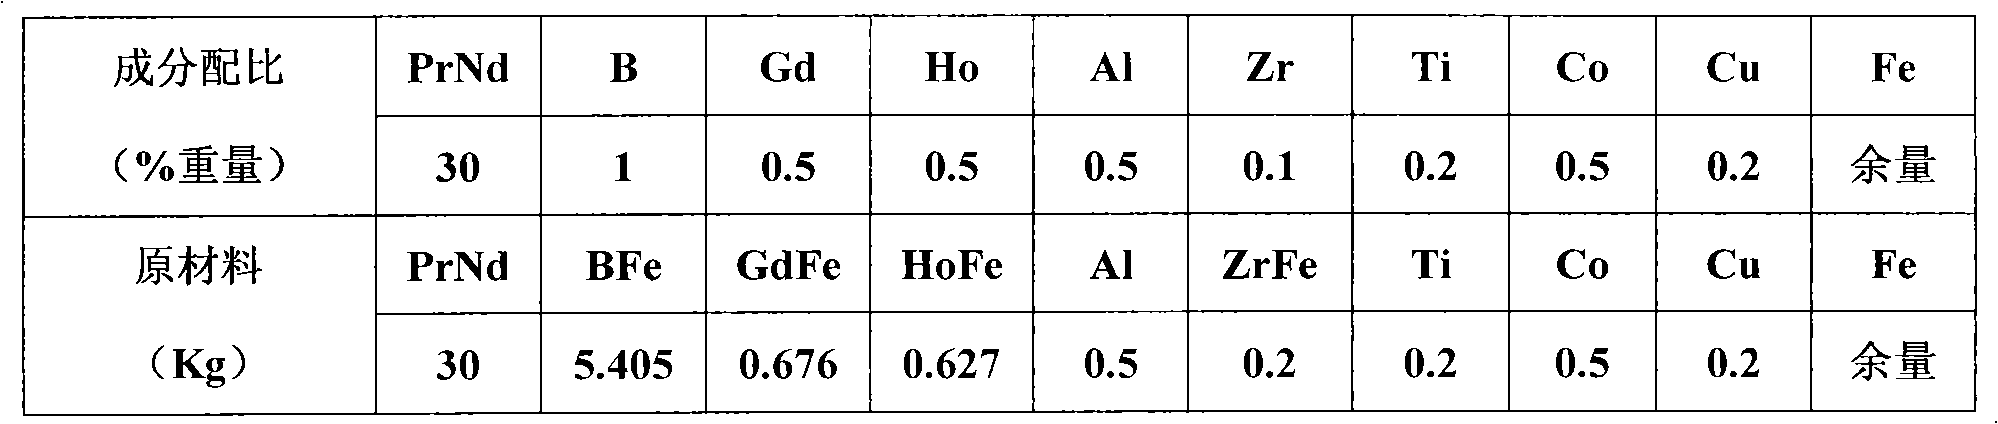 Medium-to-high grade neodymium-iron-boron magnet with composite addition of gadolinium and holmium